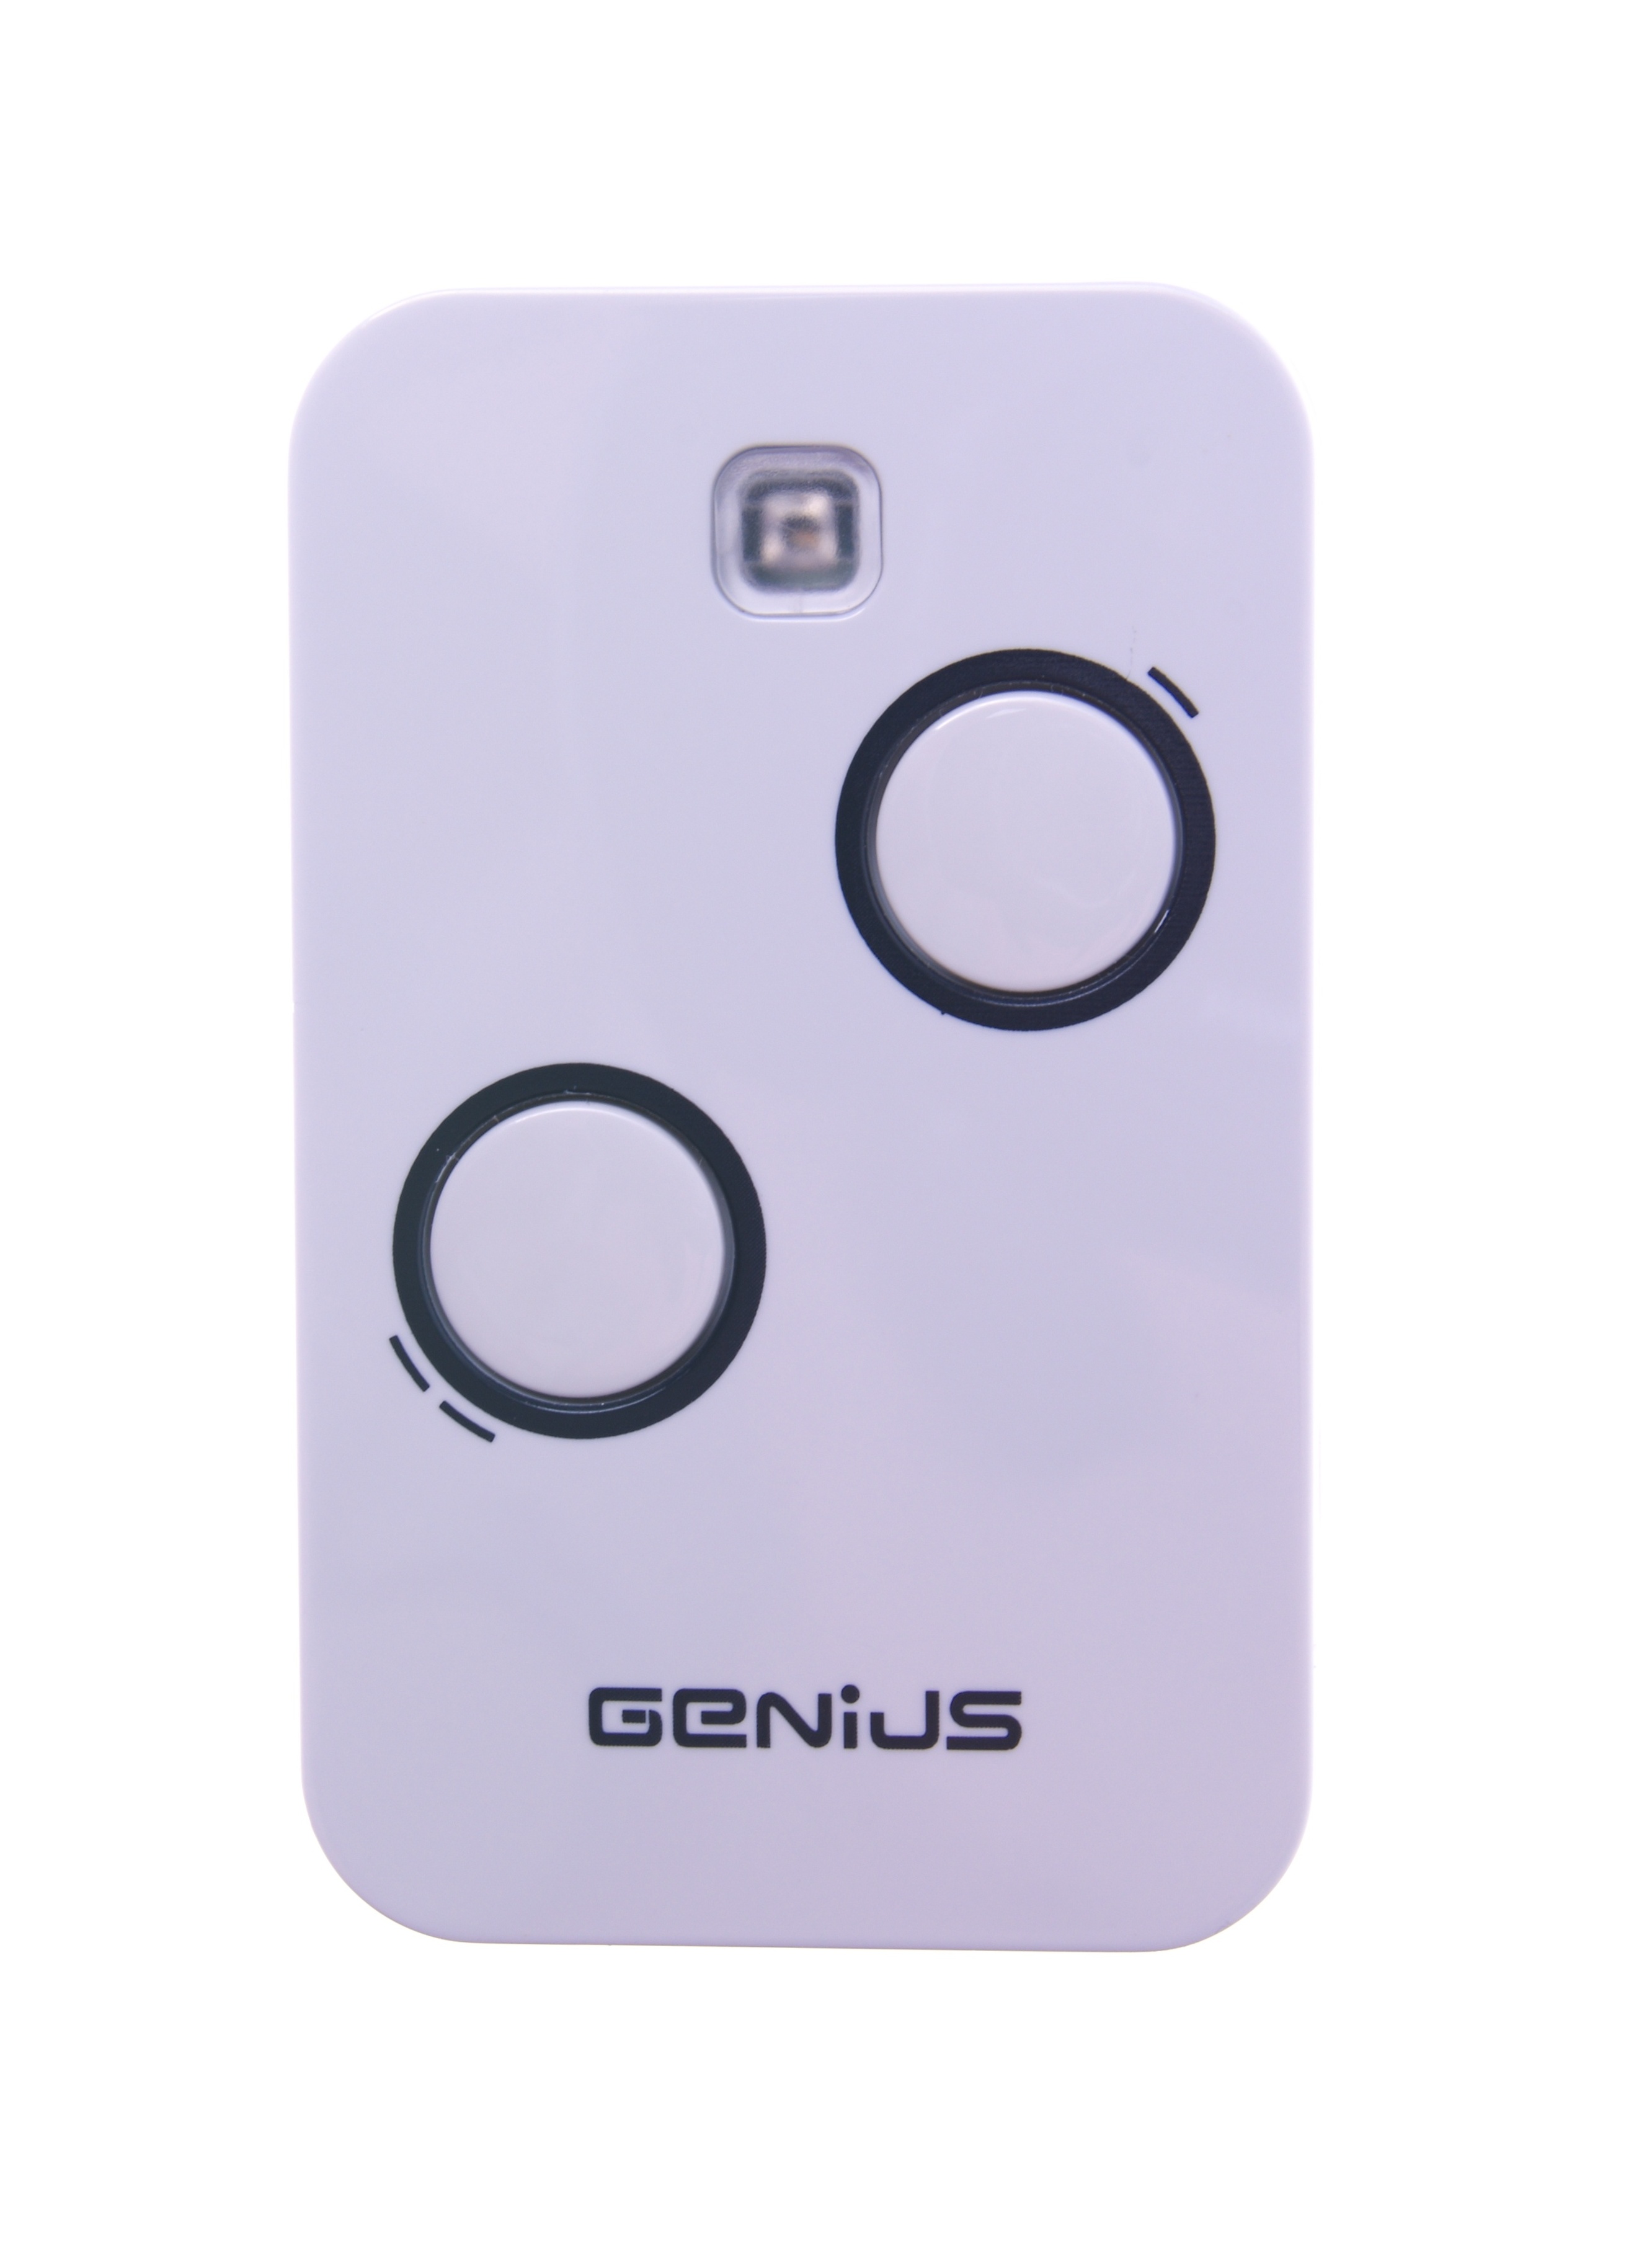 Genius KILO TX2 2 kanálový dálkový ovladač pro pohony Genius, 868,35 MHz, náhrada za Genius Amigo JA332